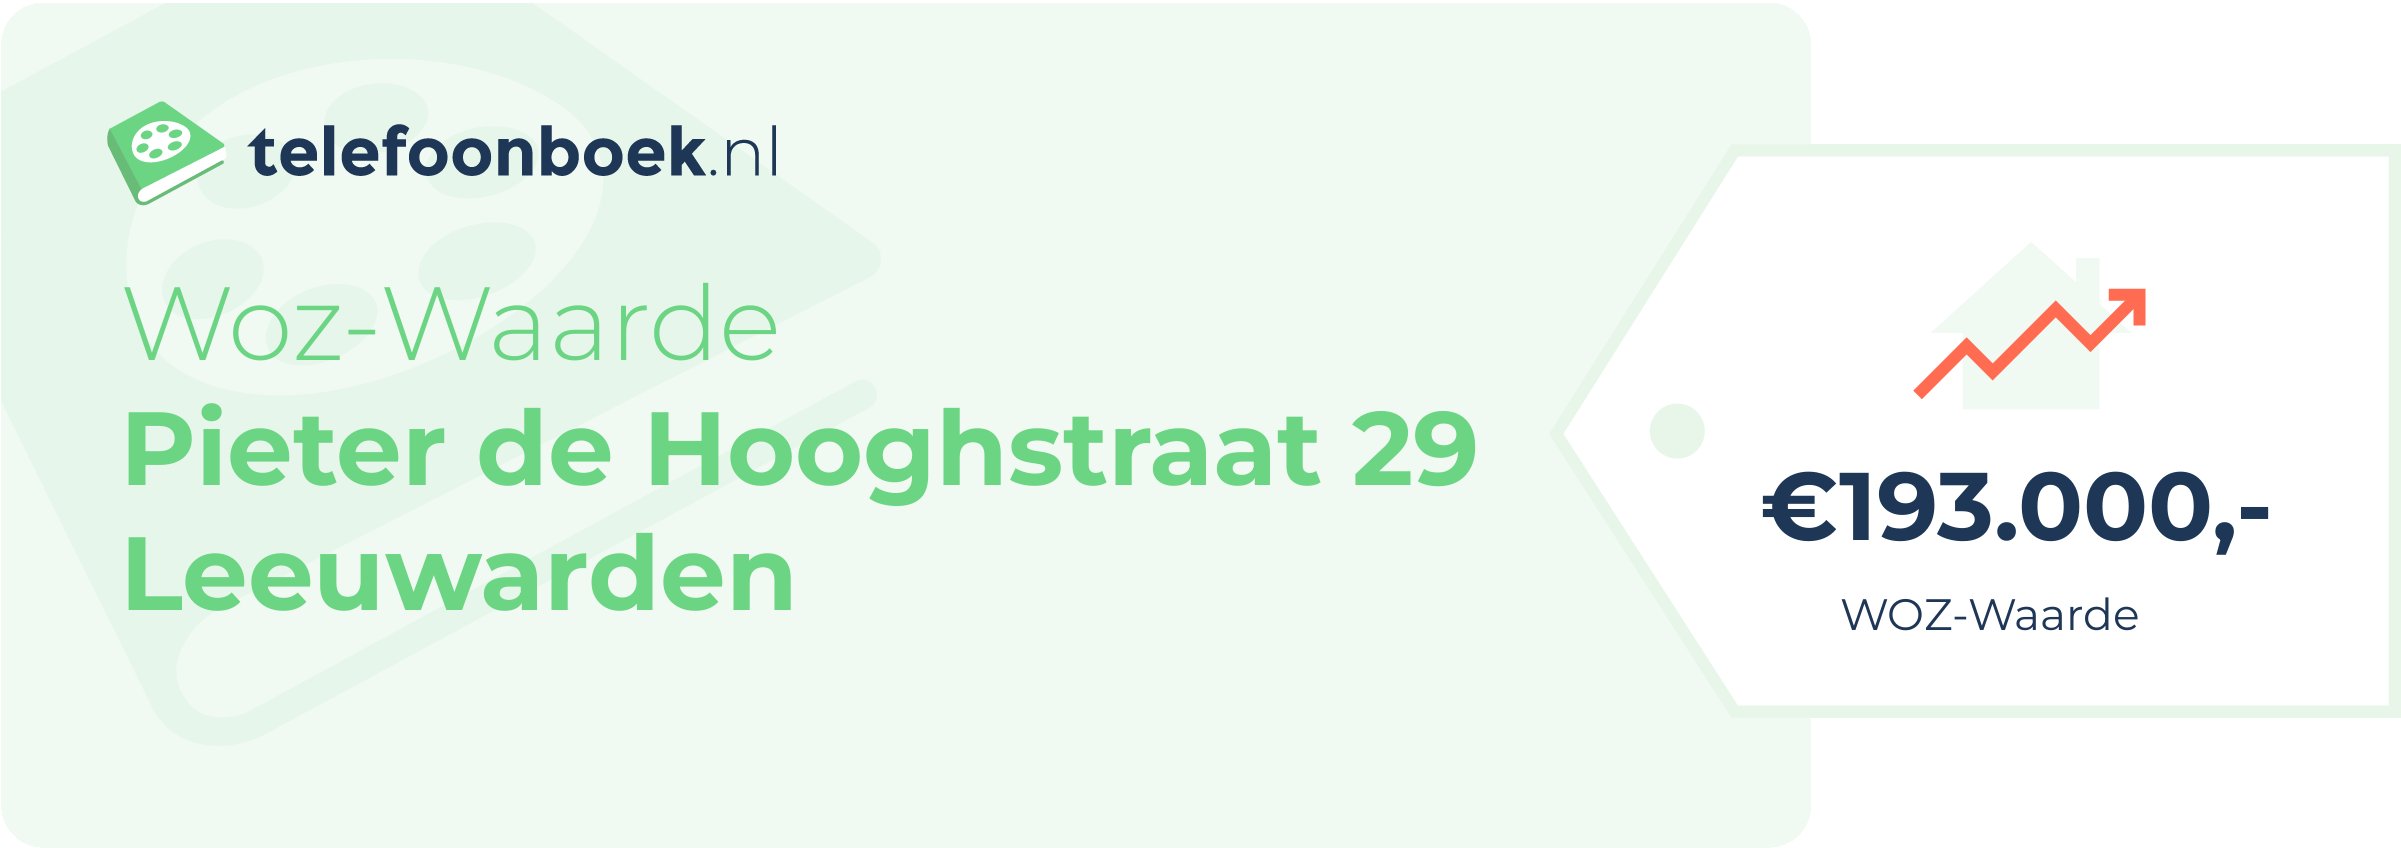 WOZ-waarde Pieter De Hooghstraat 29 Leeuwarden